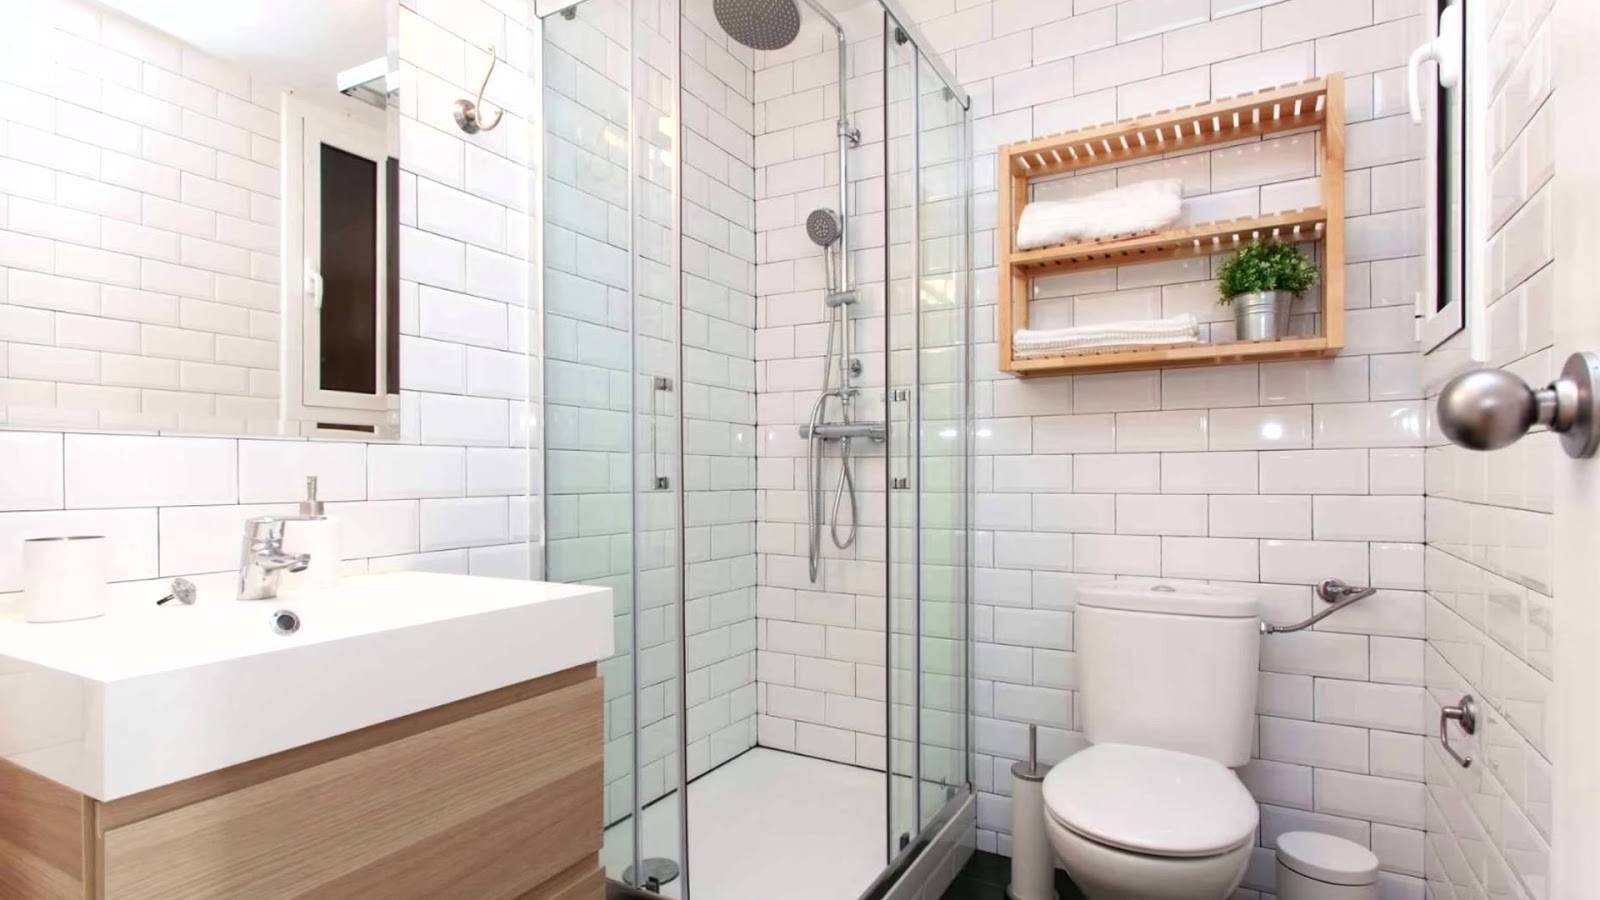 Лайфхаки для ванной: 13 полезных советов, позволяющих сделать ванную уютнее и чище